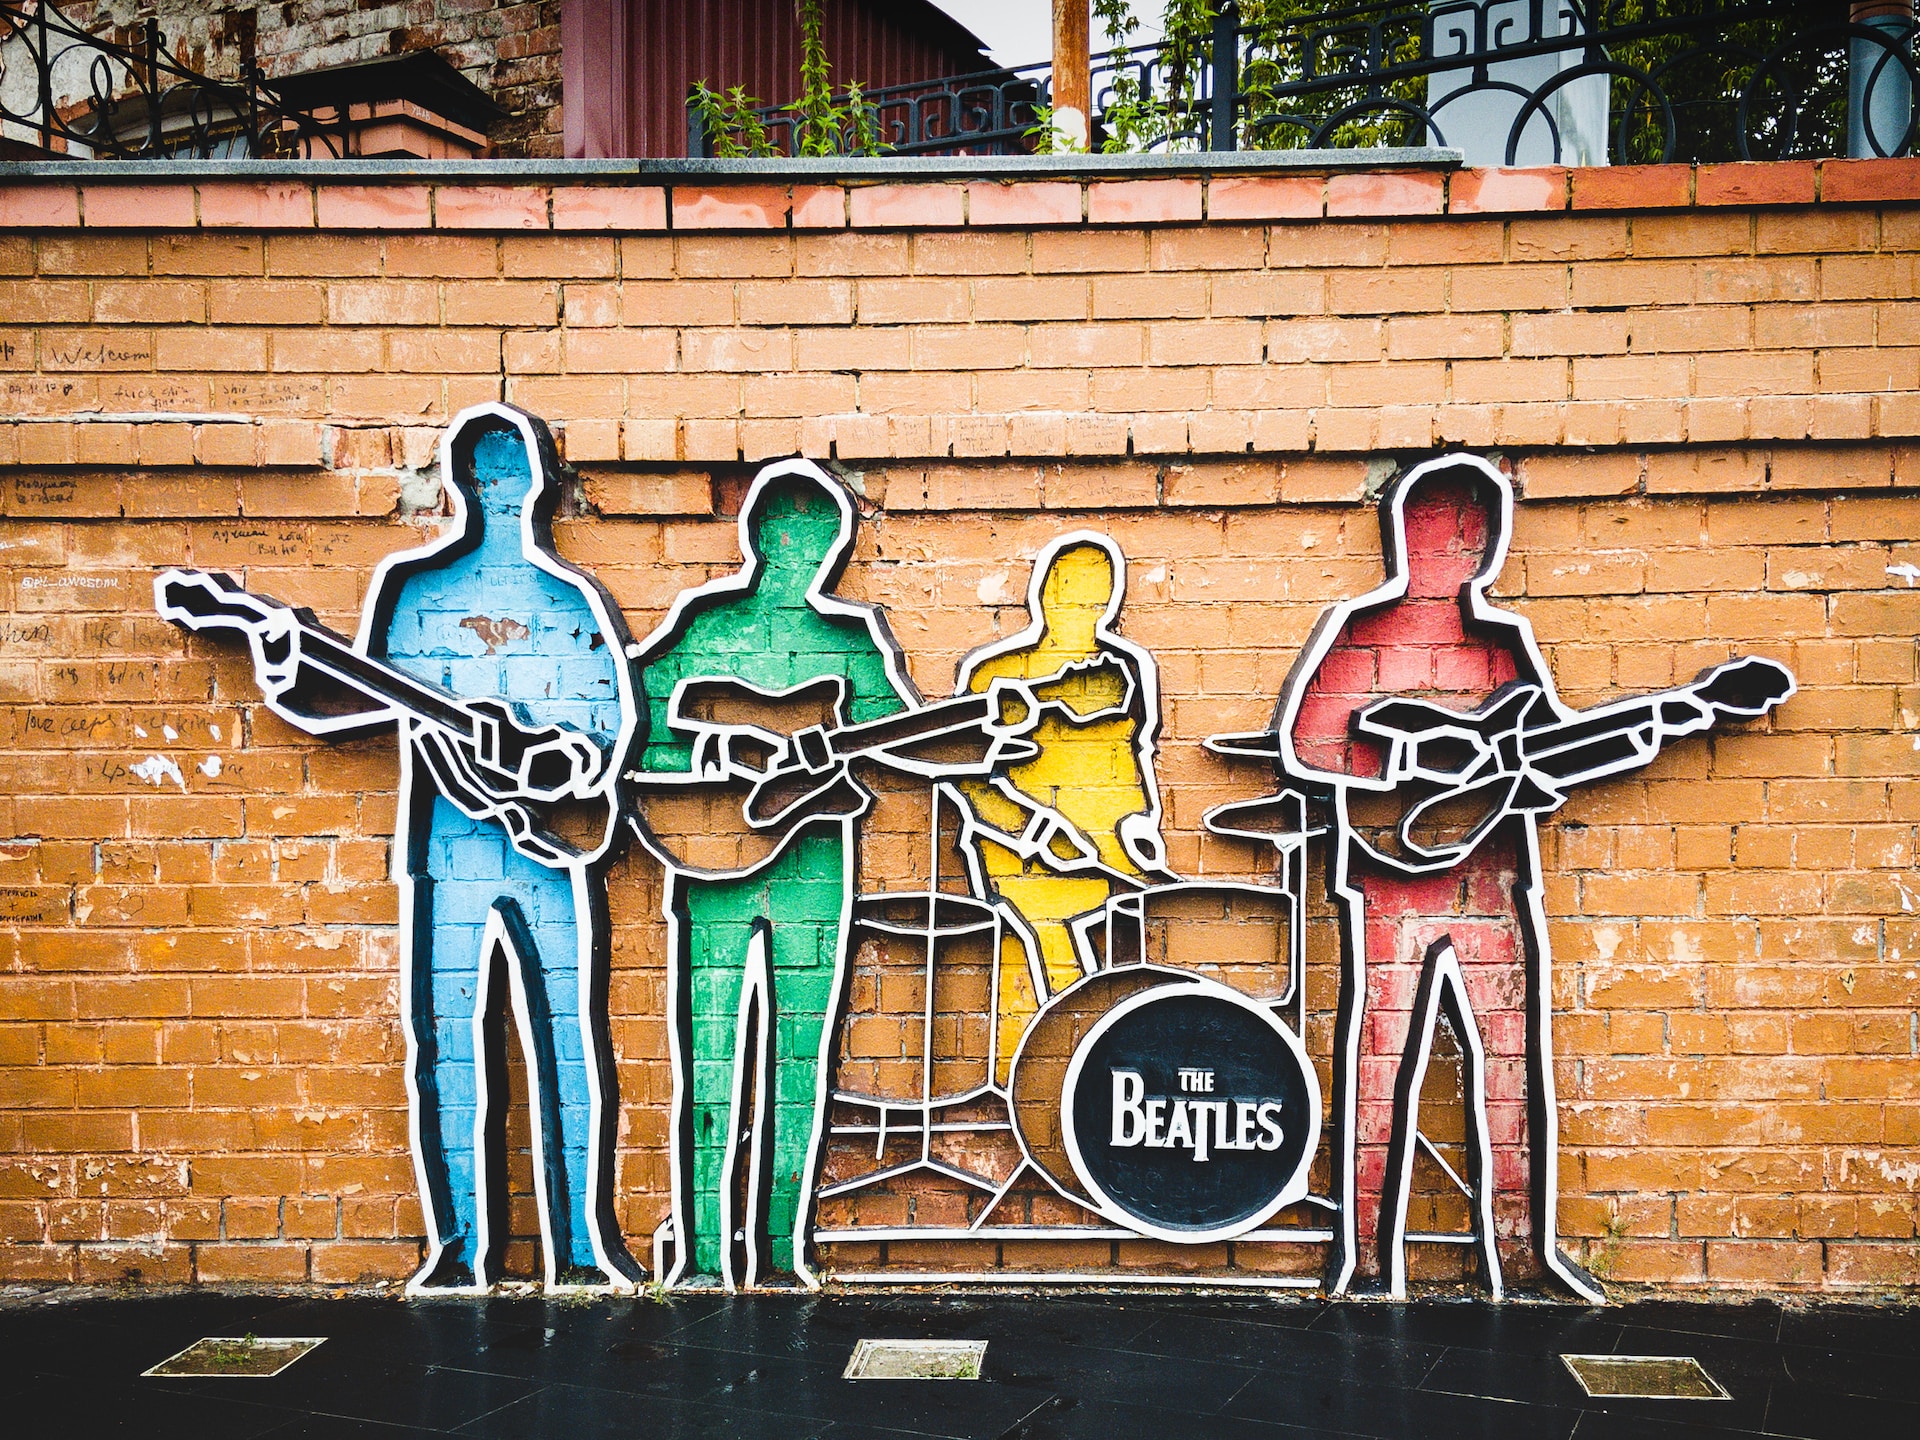 The Beatles wurden in Liverpool gegründet und waren zunächst eine Beat-Band